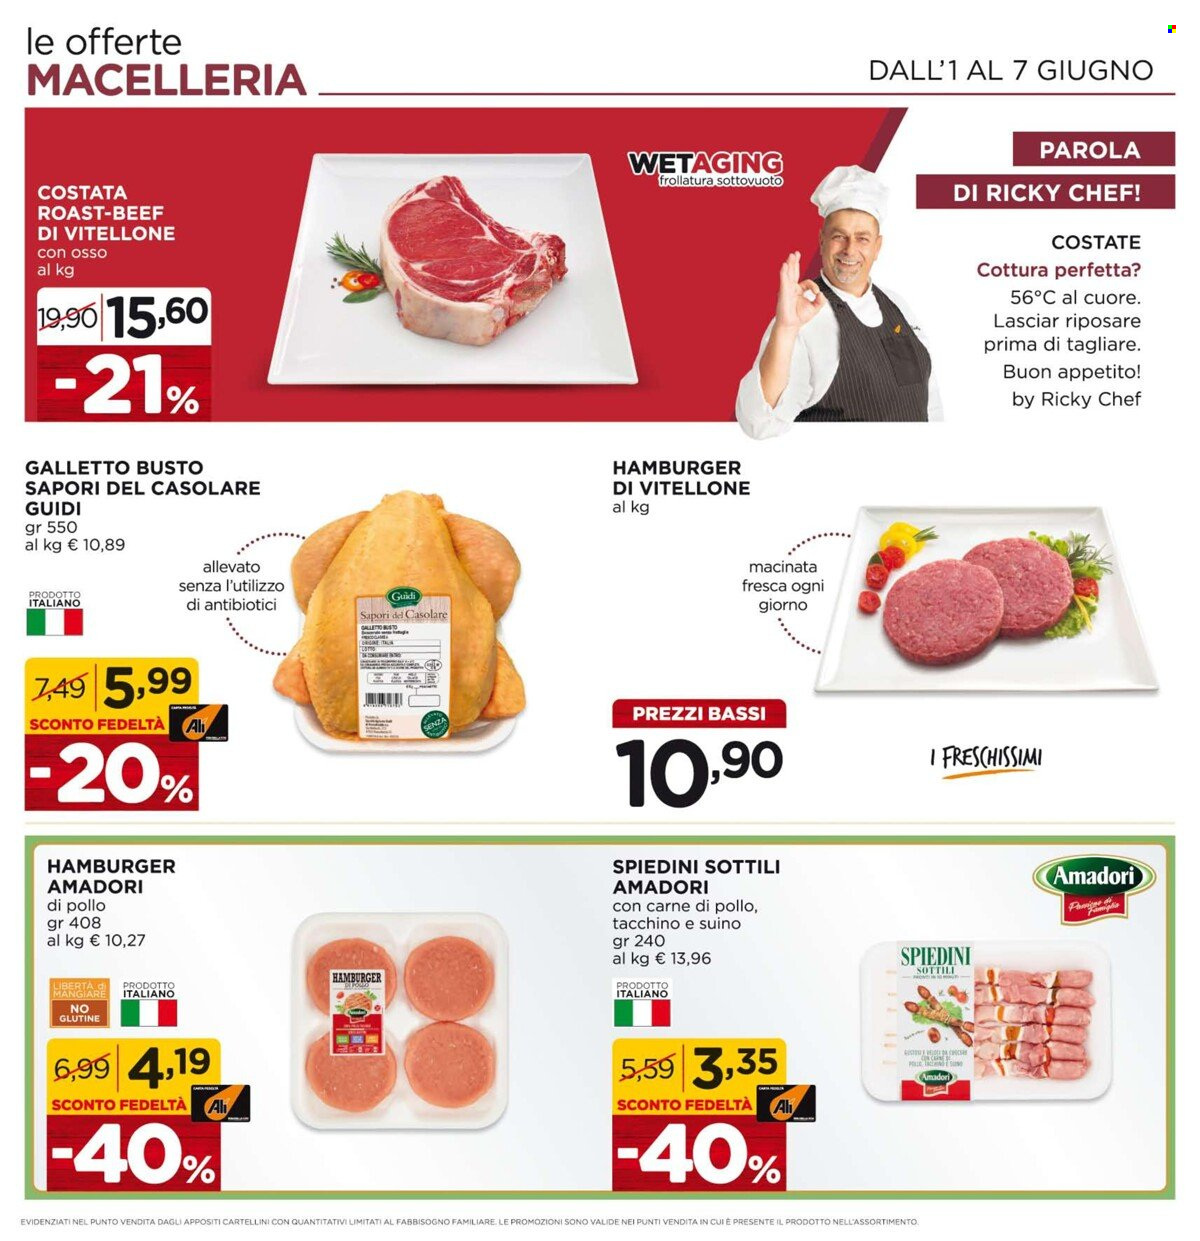 thumbnail - Volantino Alì Supermercati - 22/5/2023 - 7/6/2023 - Prodotti in offerta - galletto, Amadori, vitellone, hamburger, hamburger di vitellone, spiedini. Pagina 7.